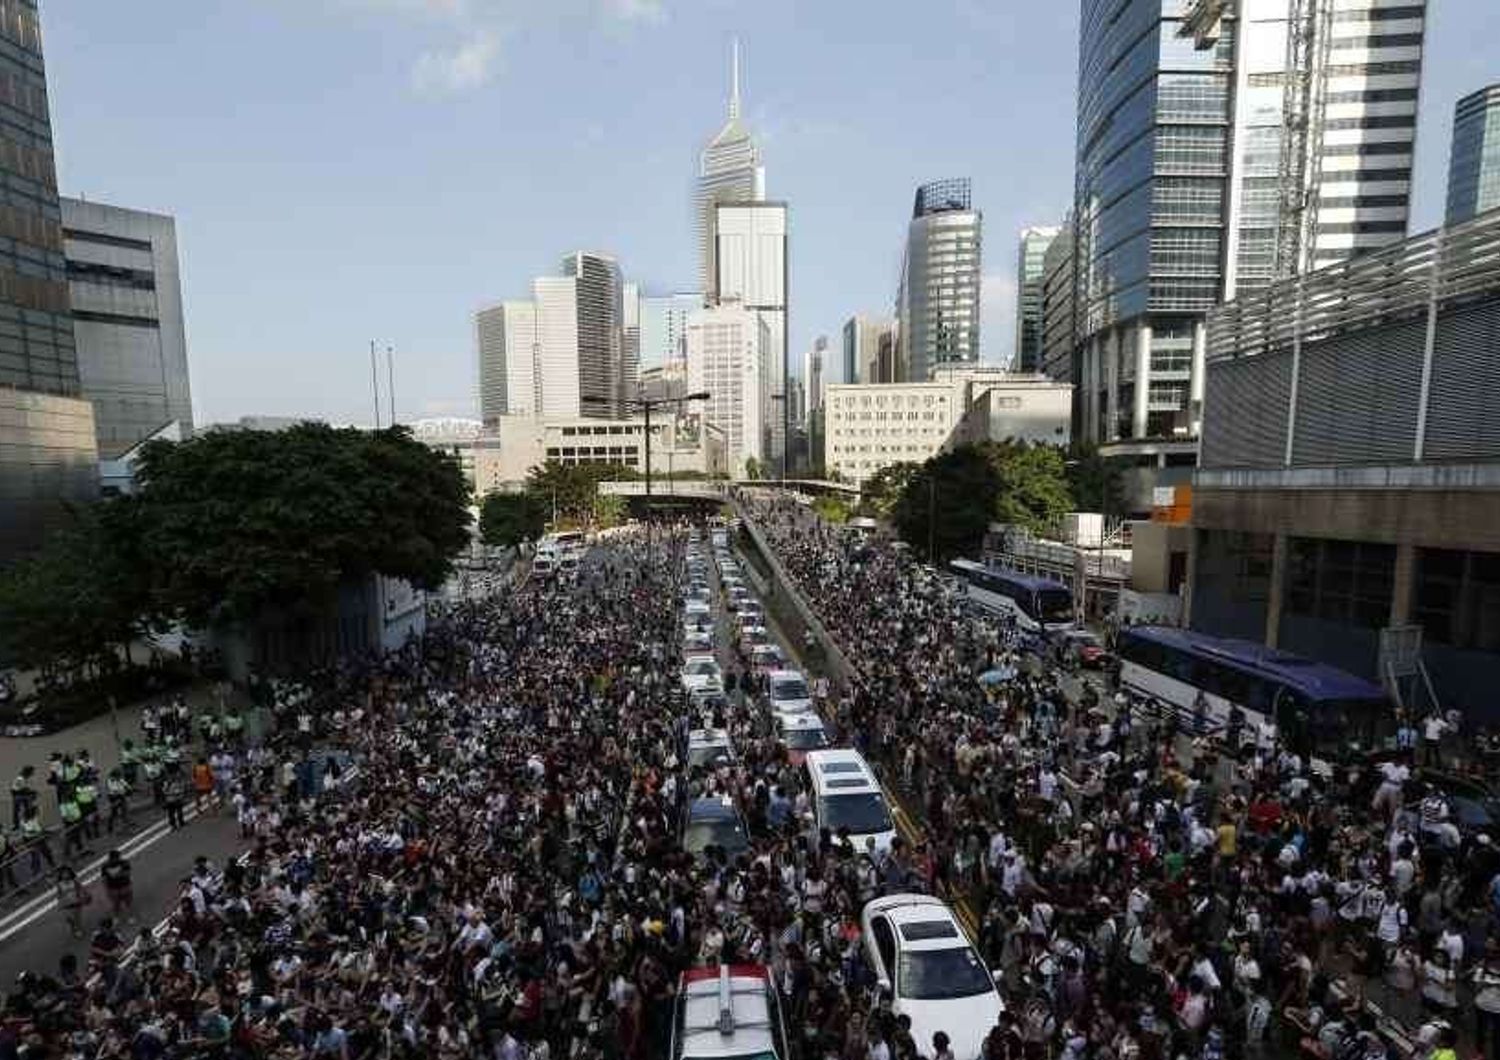 Dilaga la protesta anti-Pechino, in migliaia per le strade di Hong Kong - Foto - Video